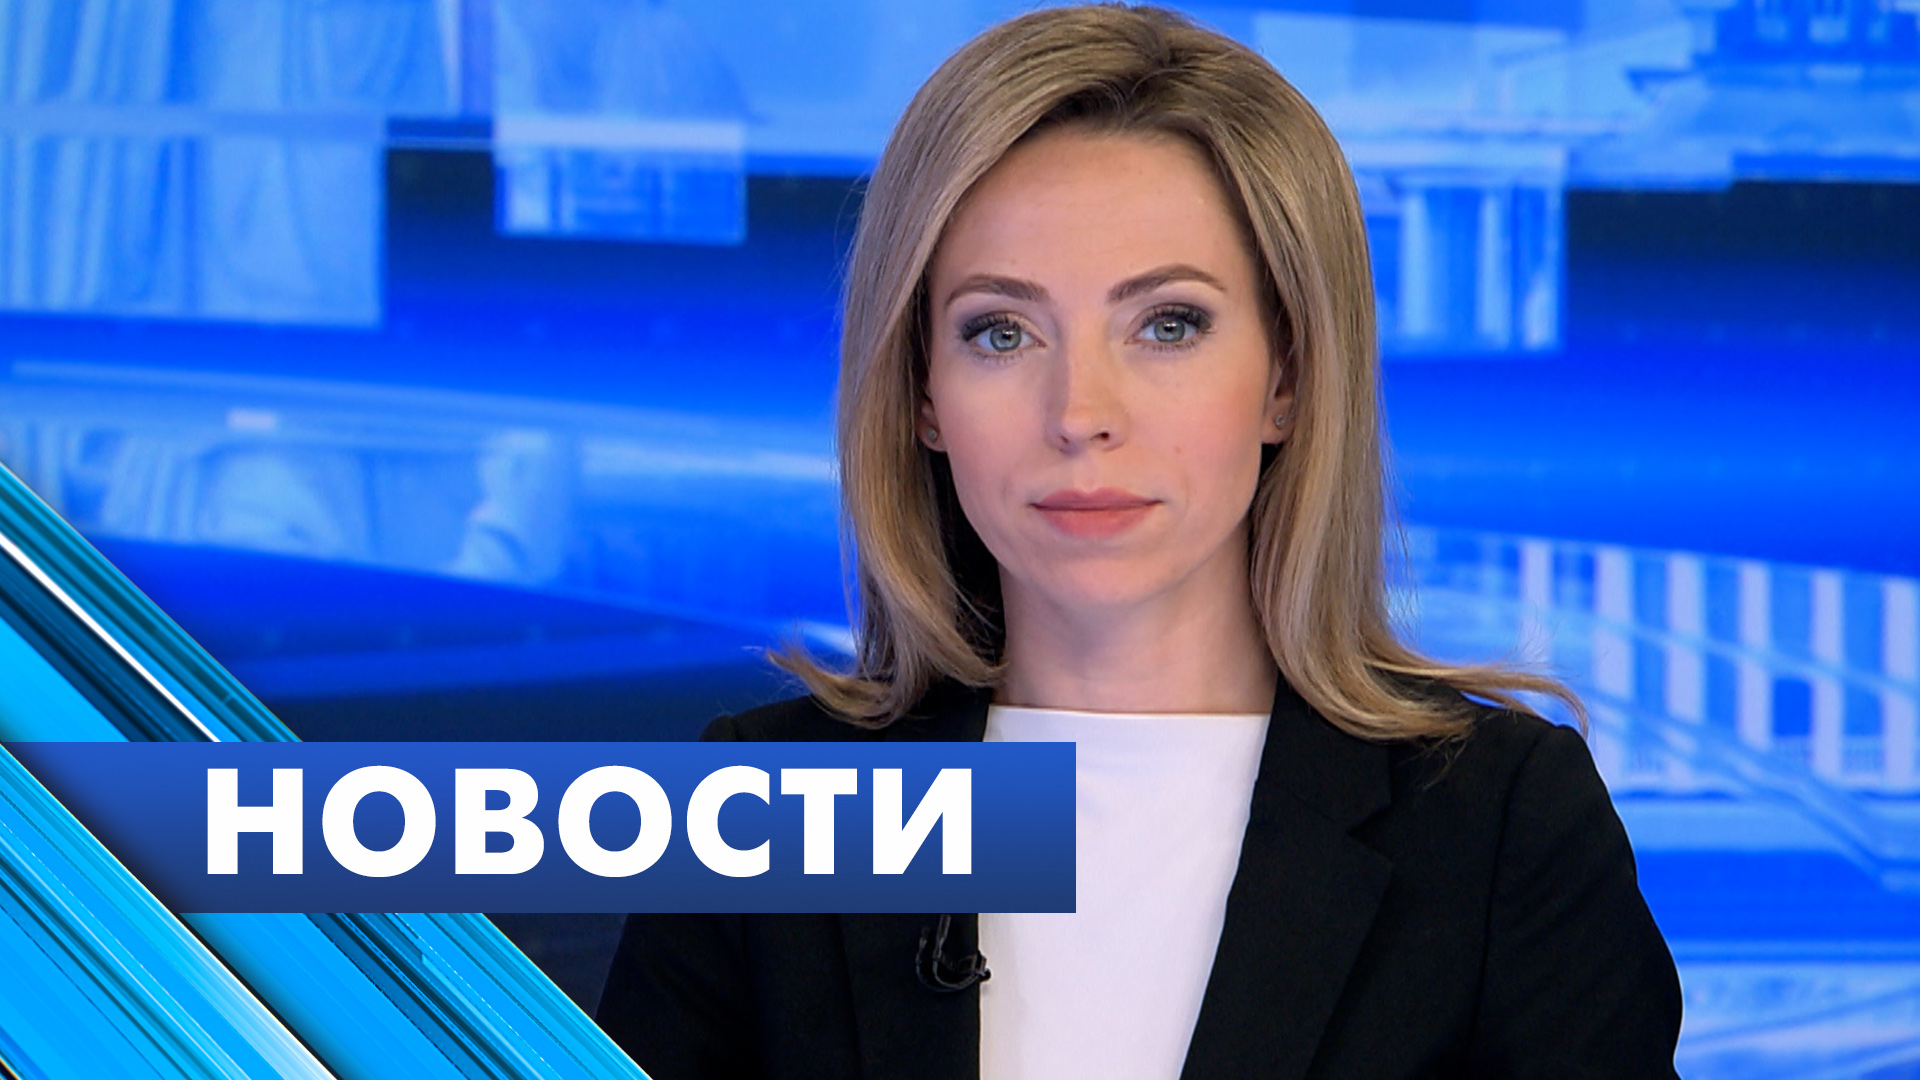 Главные новости Петербурга / 31 мая